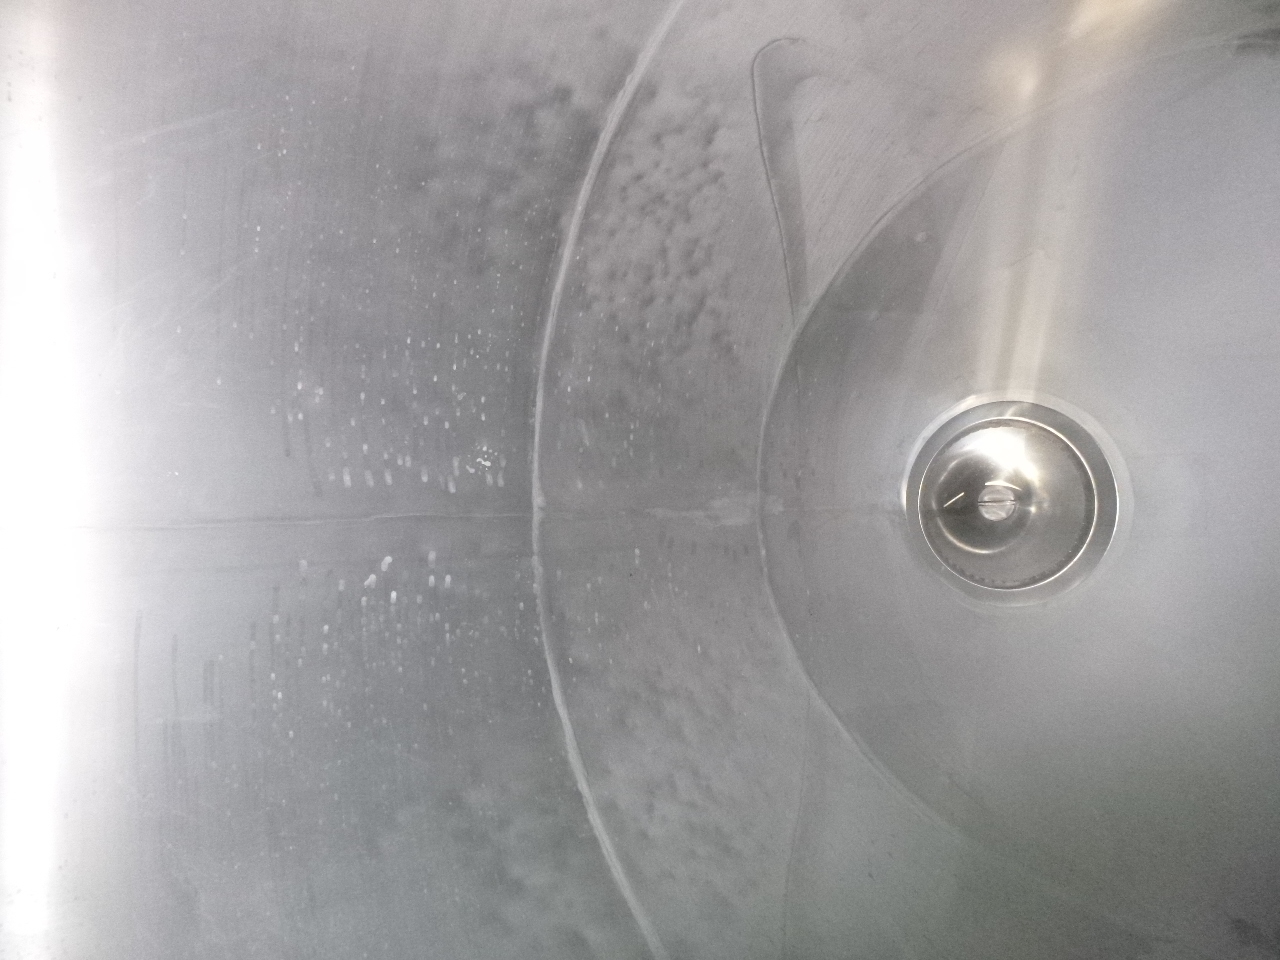 Poluprikolica cisterna za prijevoz brašna Feldbinder Powder tank alu 63 m3 (tipping): slika Poluprikolica cisterna za prijevoz brašna Feldbinder Powder tank alu 63 m3 (tipping)